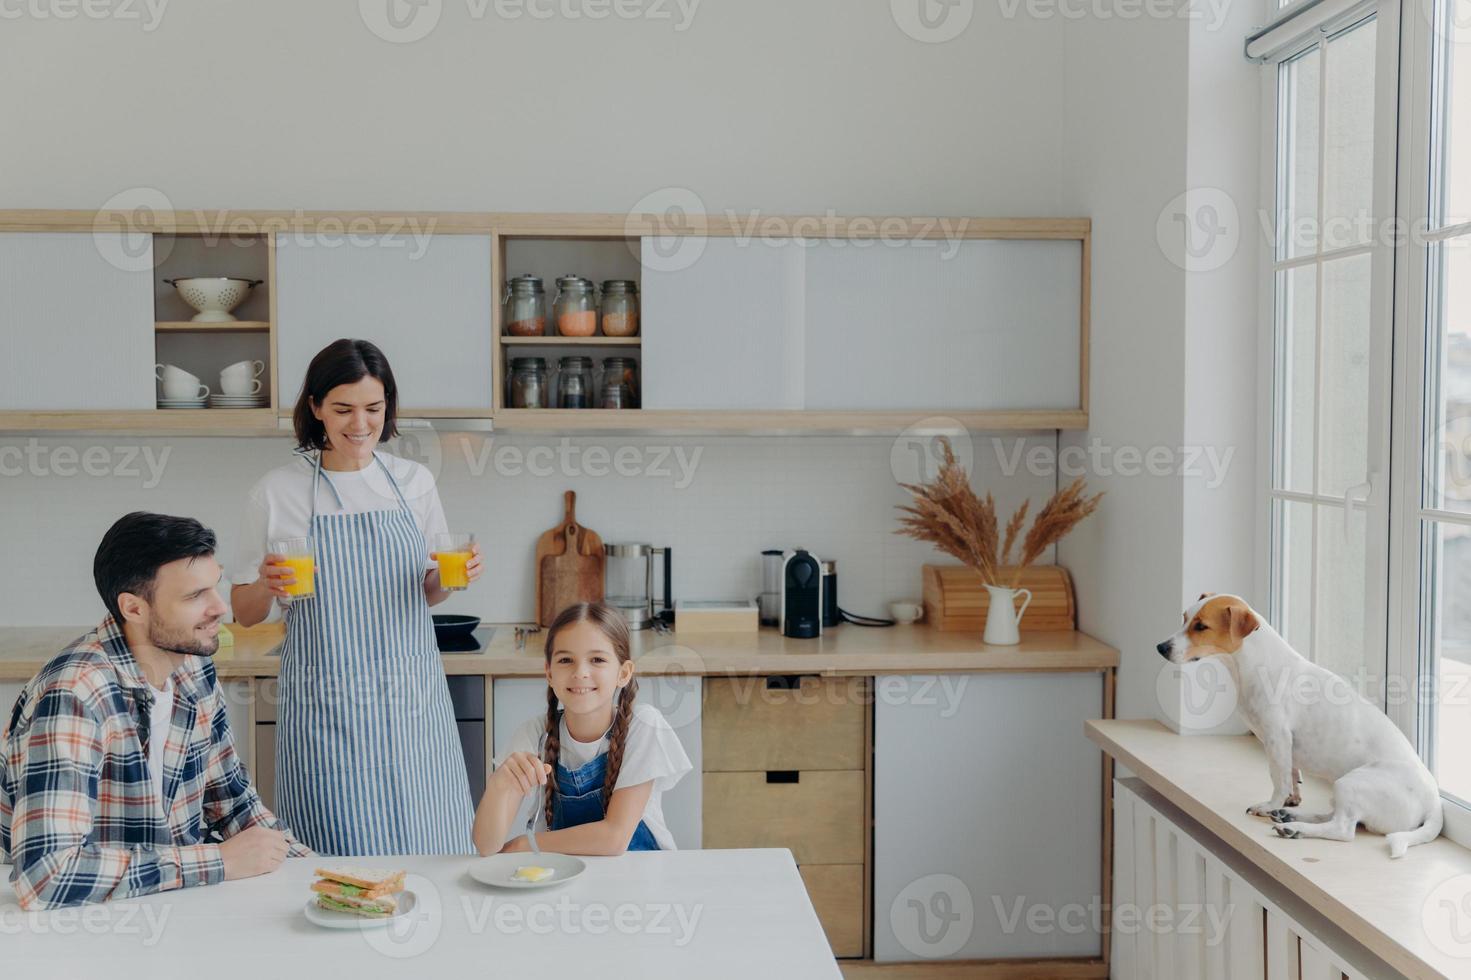 foto de mãe, filha e pai felizes posam juntos na cozinha, bebem suco fresco e comem hambúrgueres, tomam um delicioso café da manhã preparado pela mãe, suas poses favoritas de animais domésticos no peitoril da janela